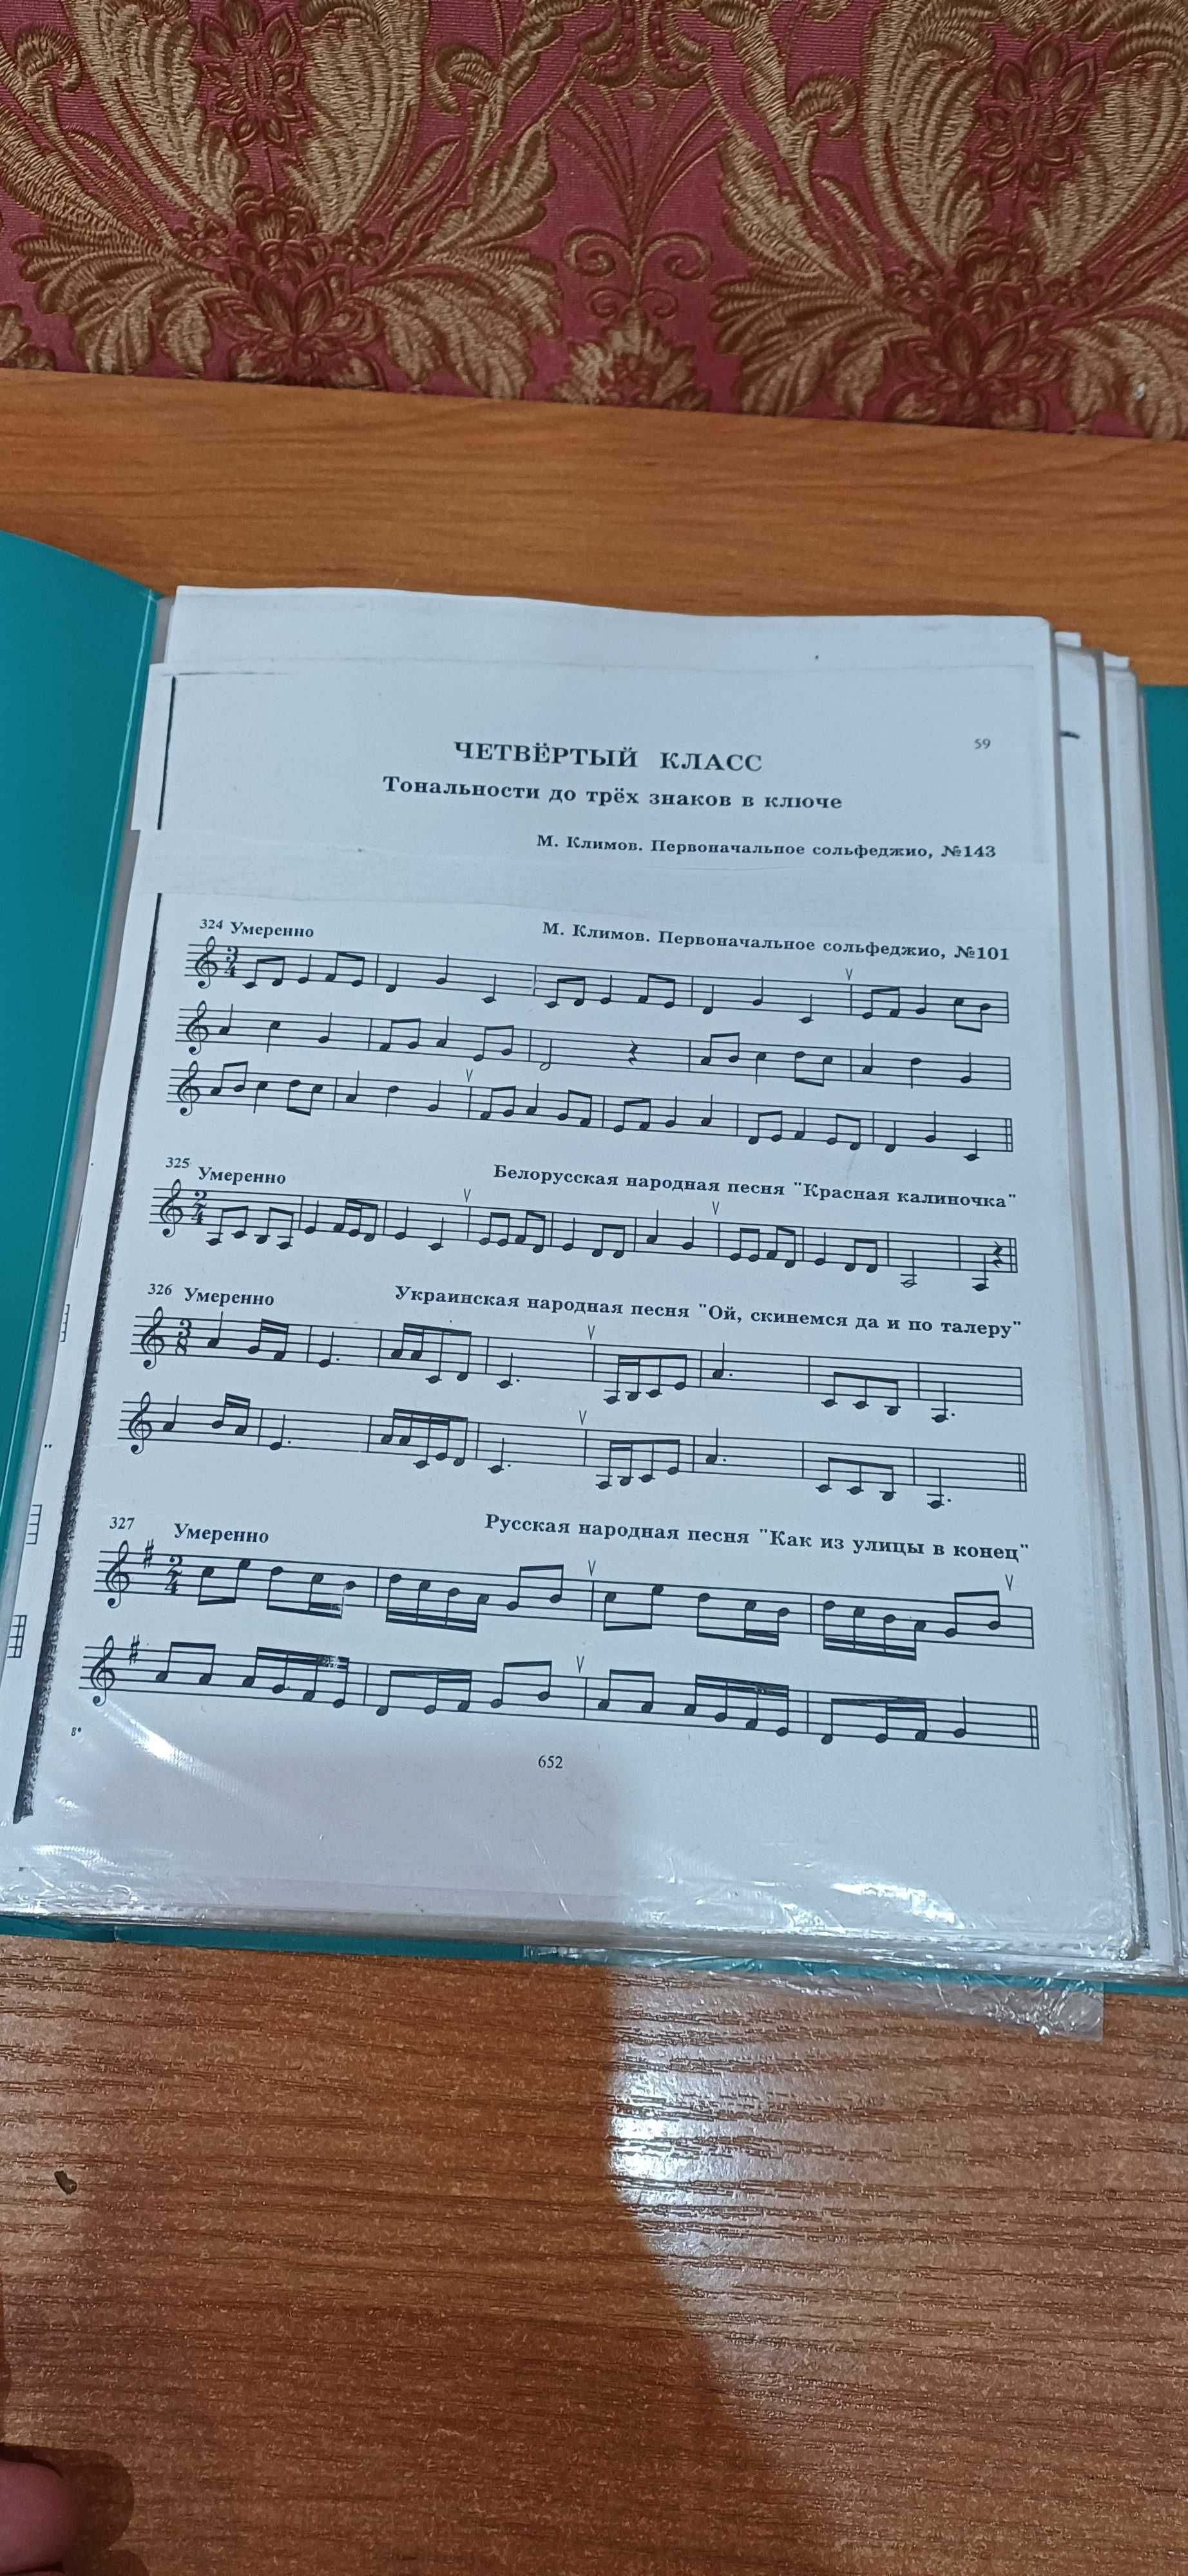 Сборник музыкальных нот для фортепиано (пианино).